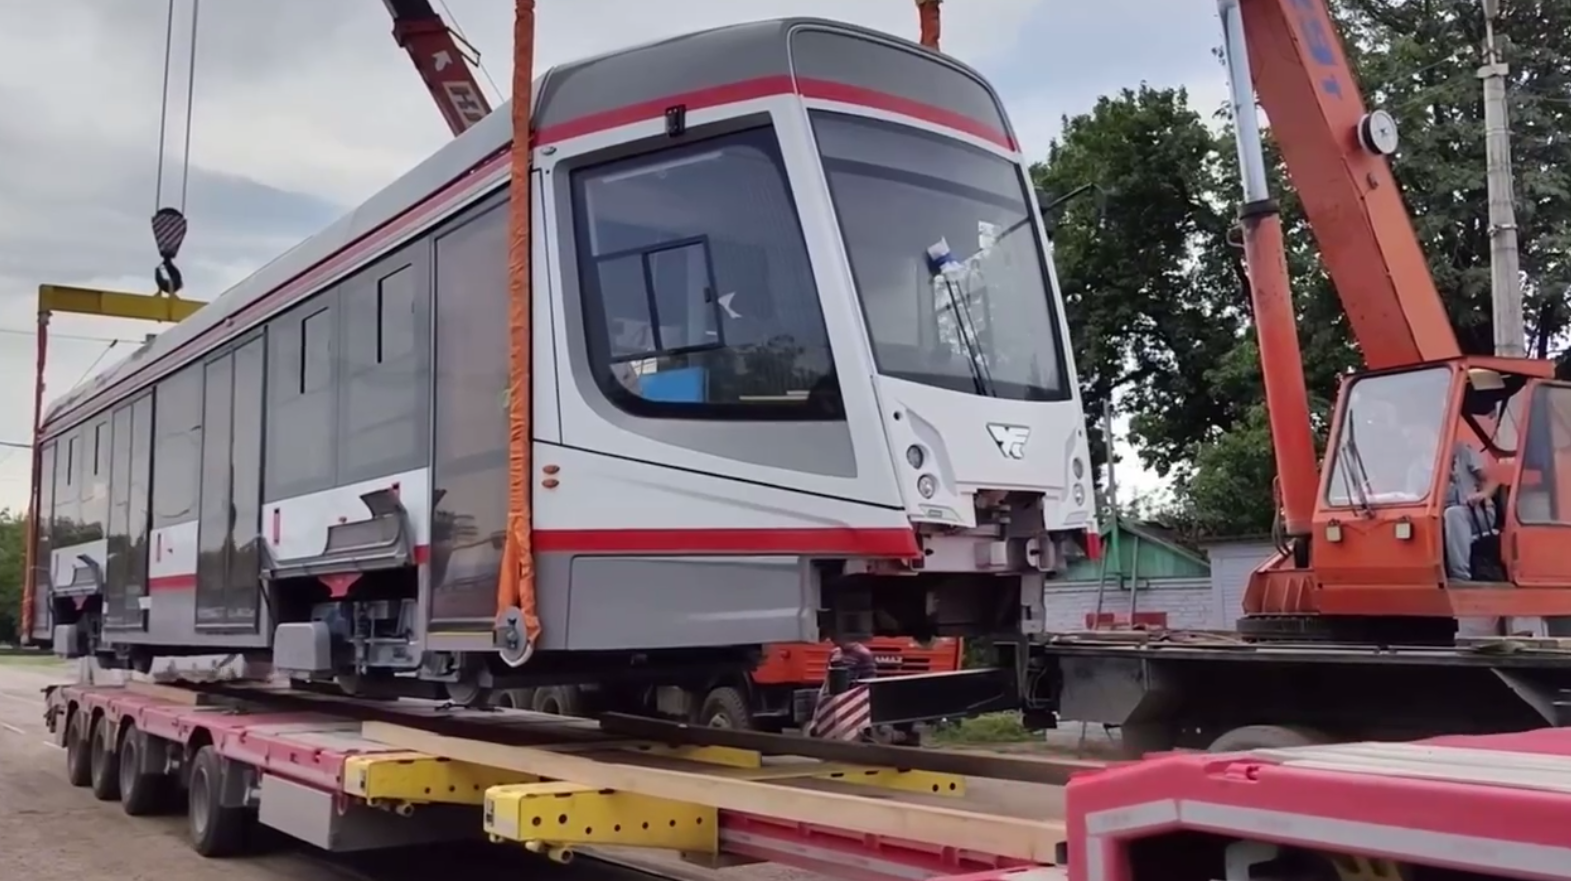 КубанскиеВести.Ру - Новые краснодарские трамваи выйдут на линию в августе нынешнего года